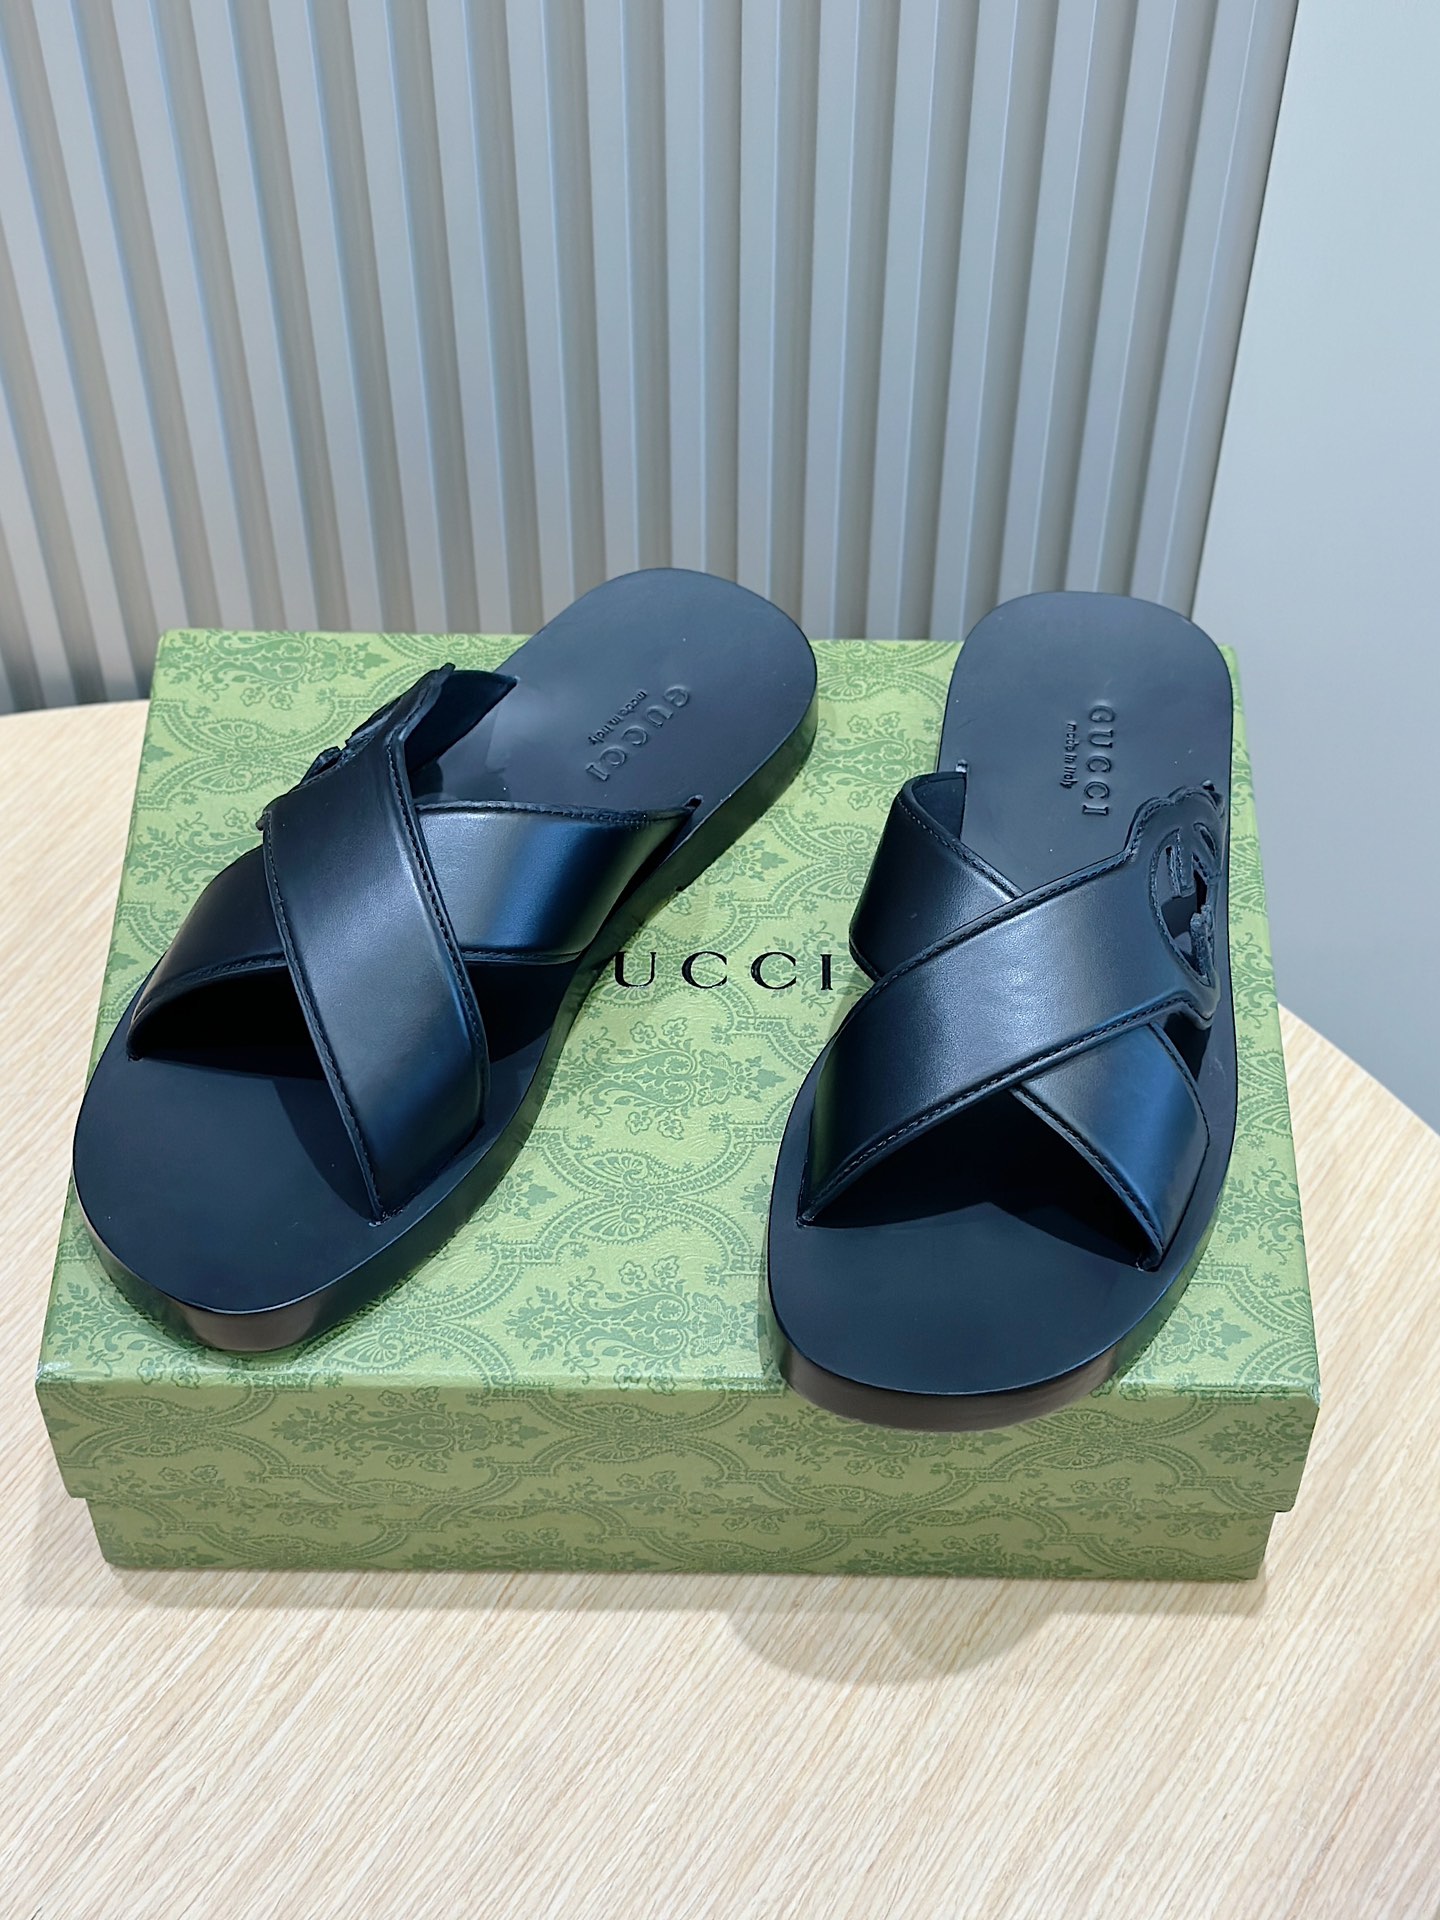 Come iniziare a vendere replica
 Gucci Lusso
 Scarpe Pantofole Nero Openwork Uomini Pelle bovina Cuoio genuino